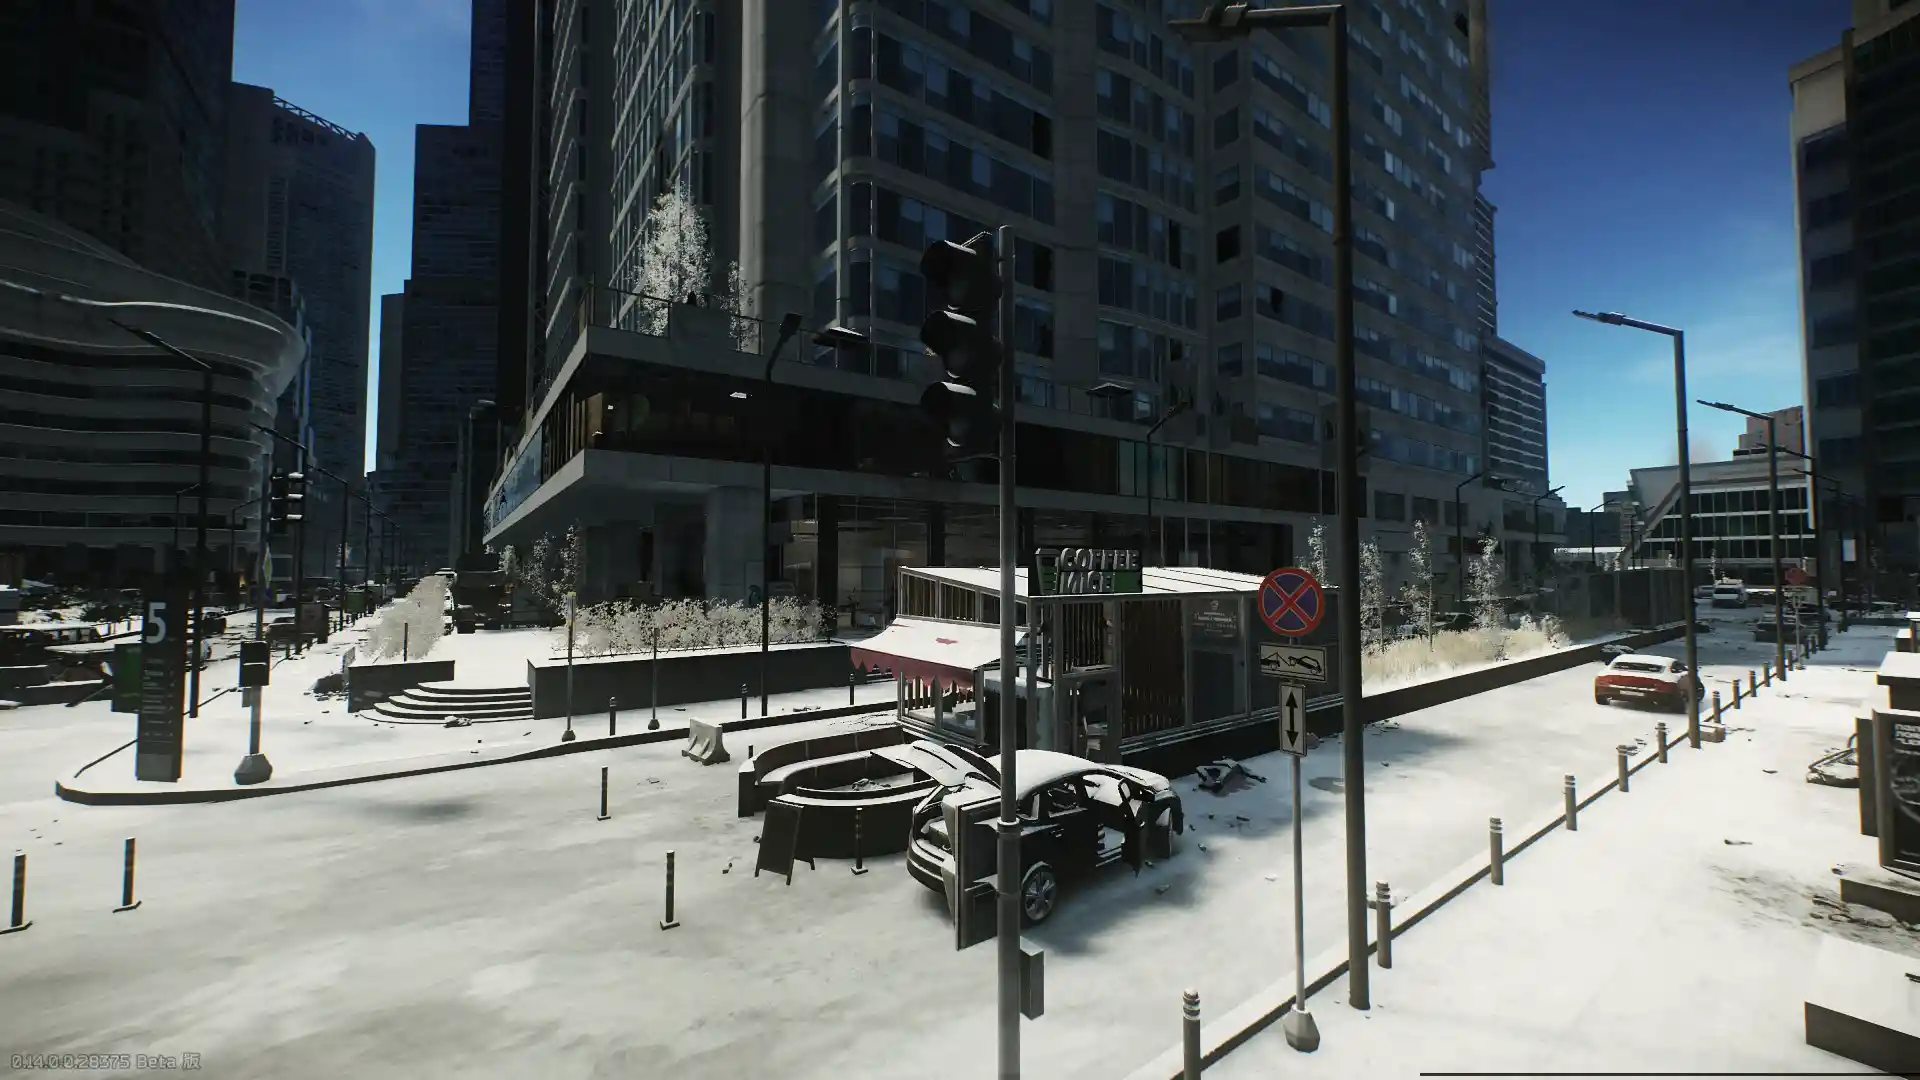 GROUND_ZERO-Scenery-MainStreet2_Winter.jpg